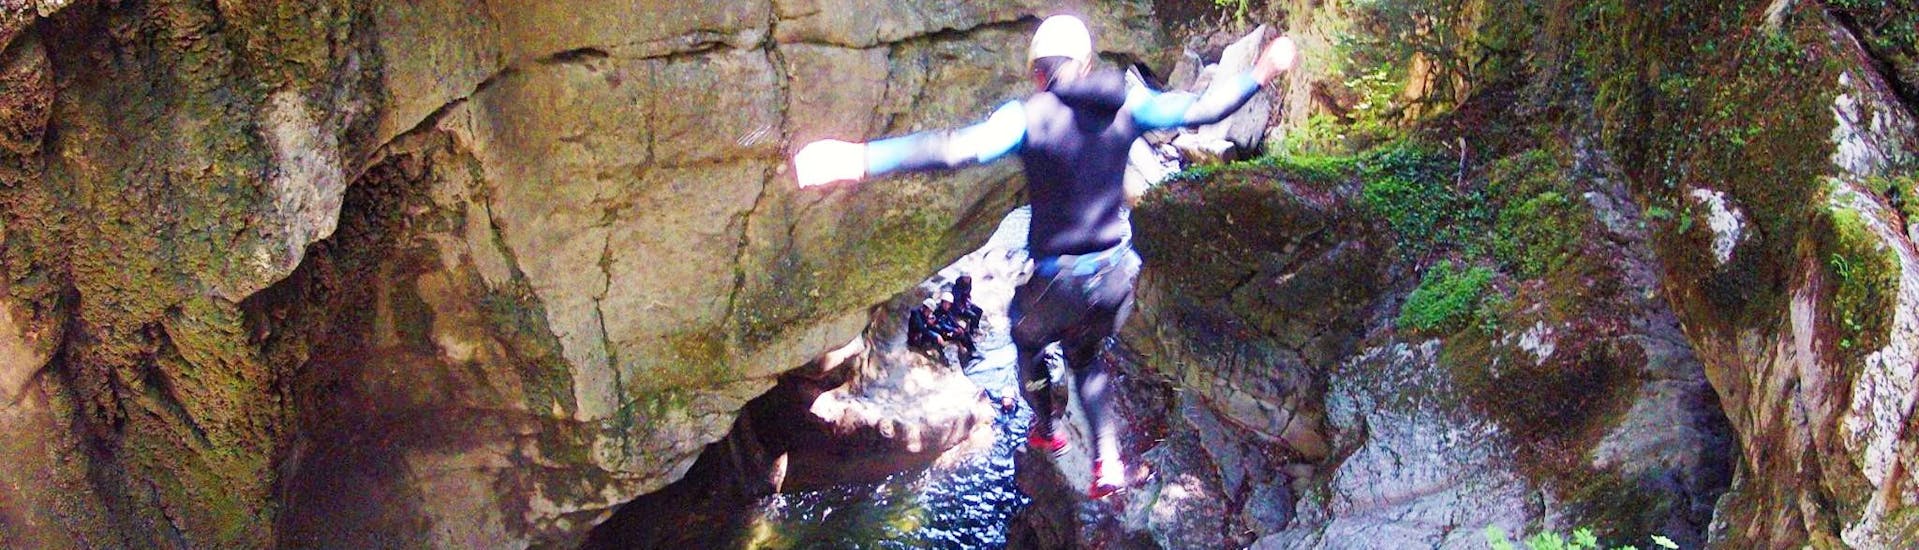 Ein Teilnehmer springt in ein natürliches Becken im Canyon du Pont-du-diable während einer abenteuerlichen Canyoningtour mit Takamaka Aix-les-Bains